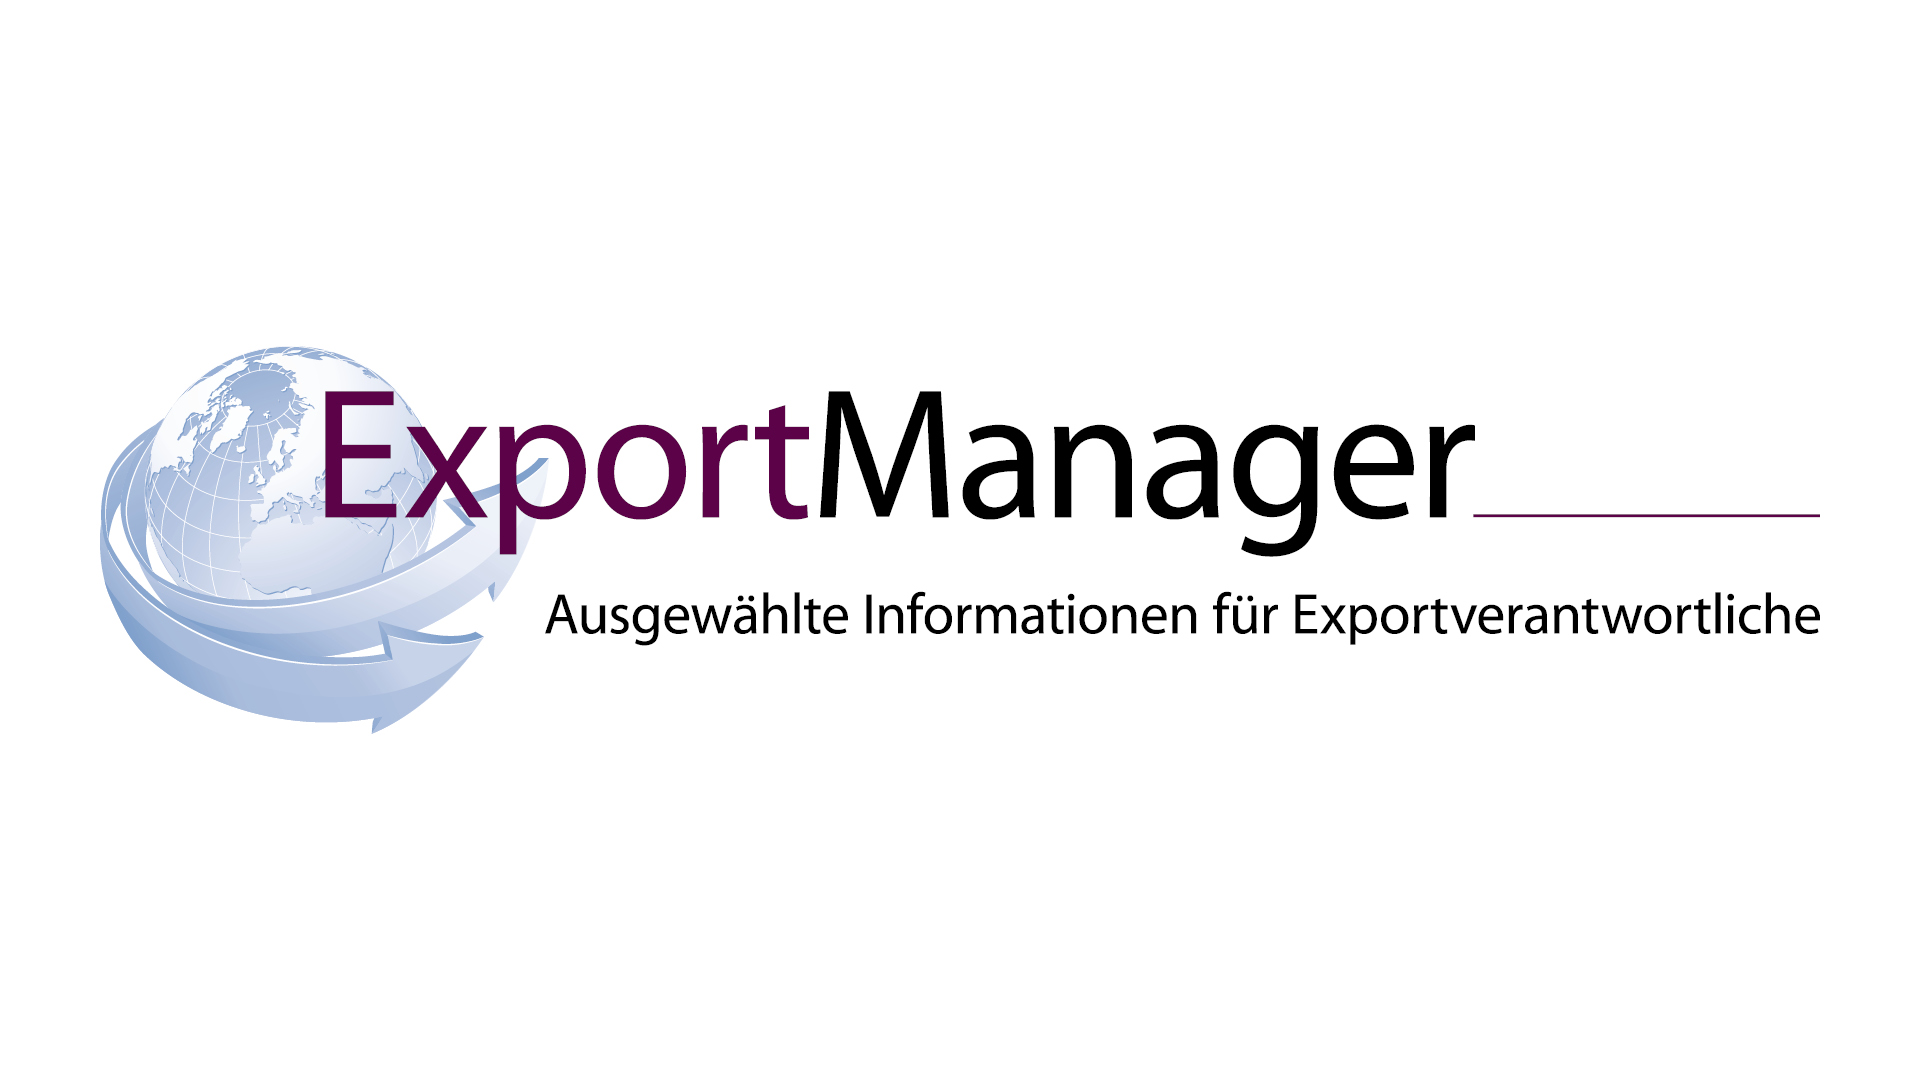 (c) Exportmanager-online.de